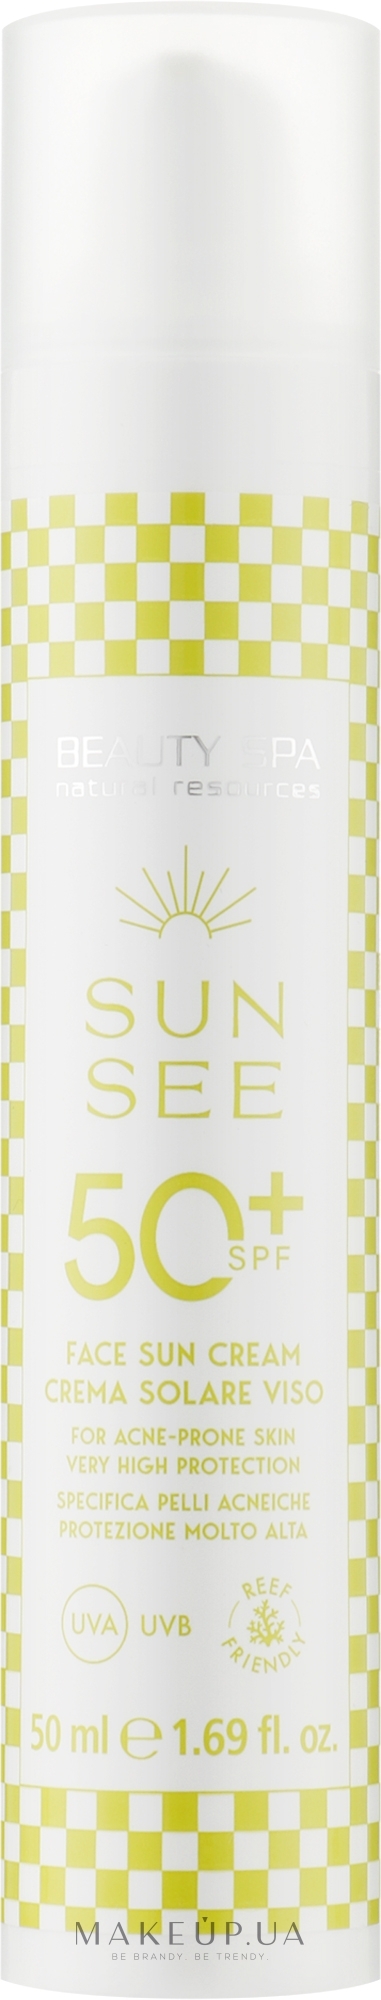 Сонцезахисний крем SPF 50 для жирної та комбінованої шкіри обличчя - Beauty Spa Sun See Face Sun Cream — фото 50ml